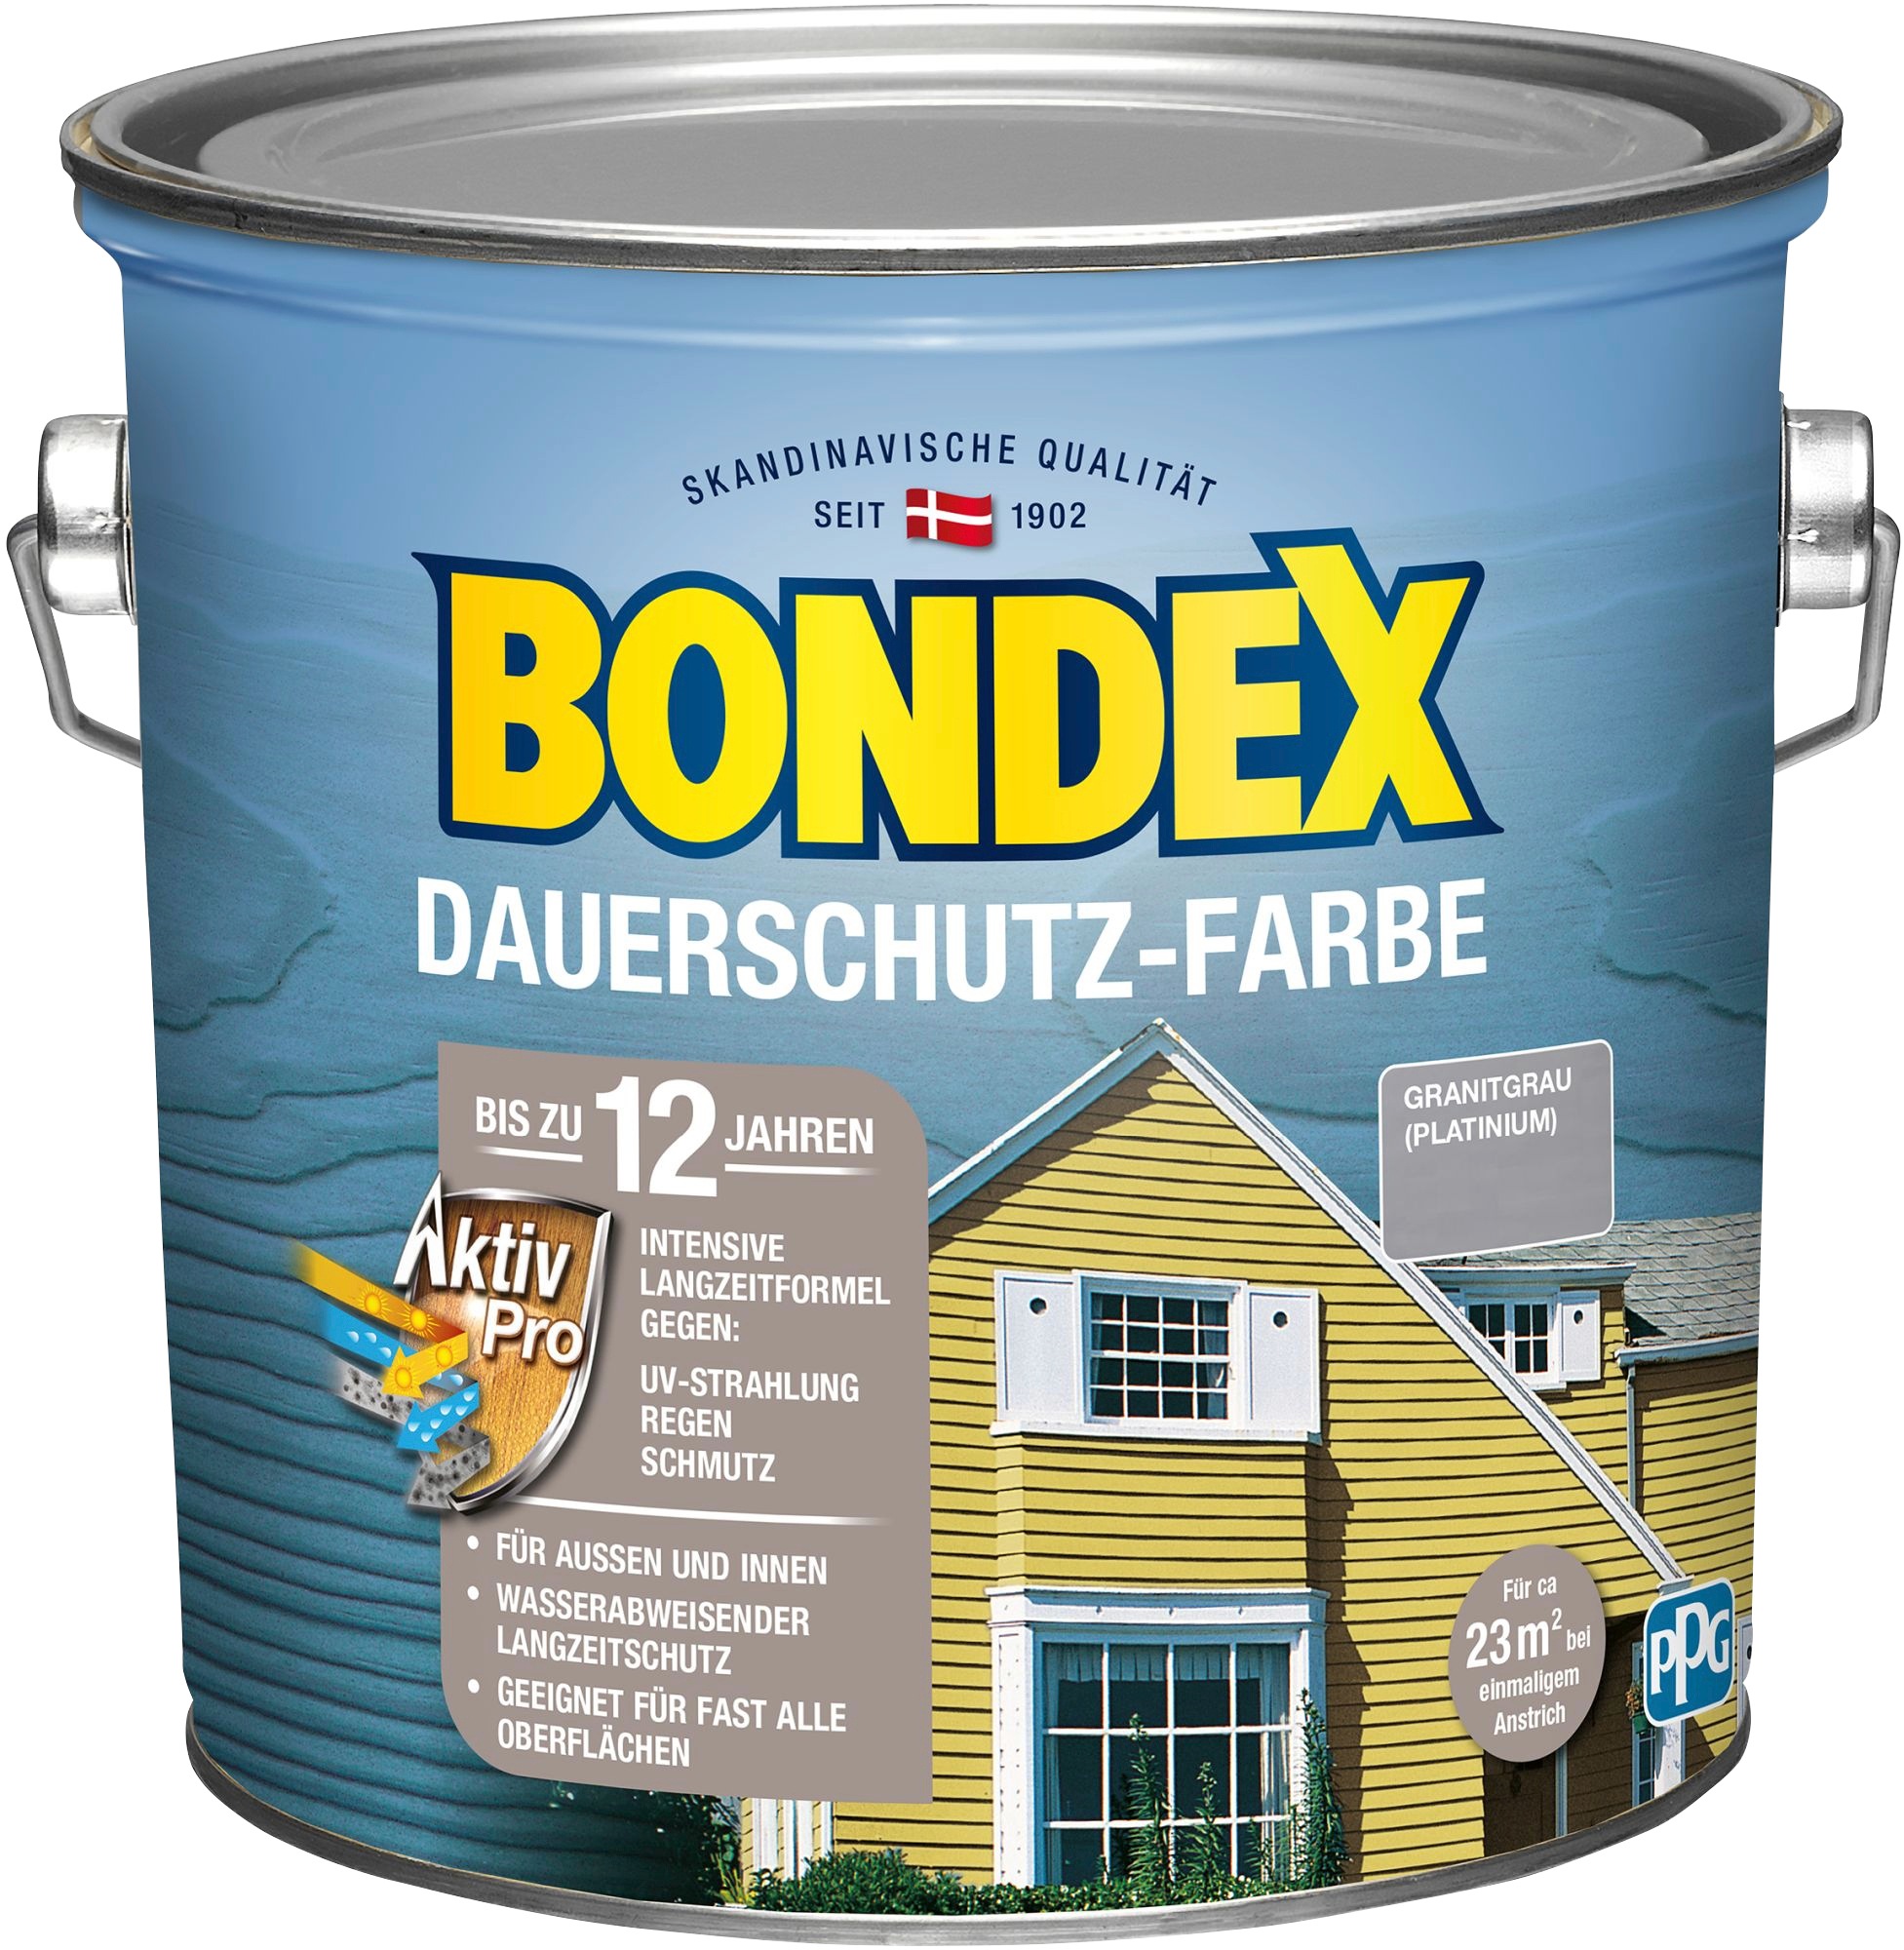 Bondex Wetterschutzfarbe "DAUERSCHUTZ-FARBE"